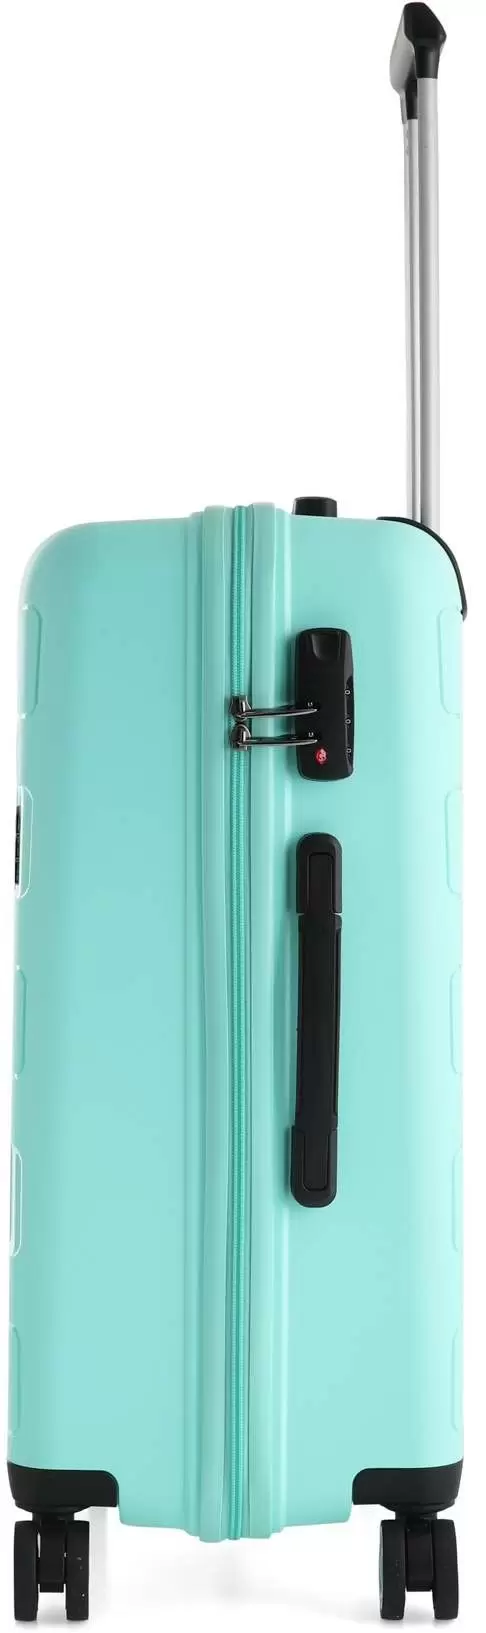 Комплект чемоданов CCS 5236 Set, зеленый